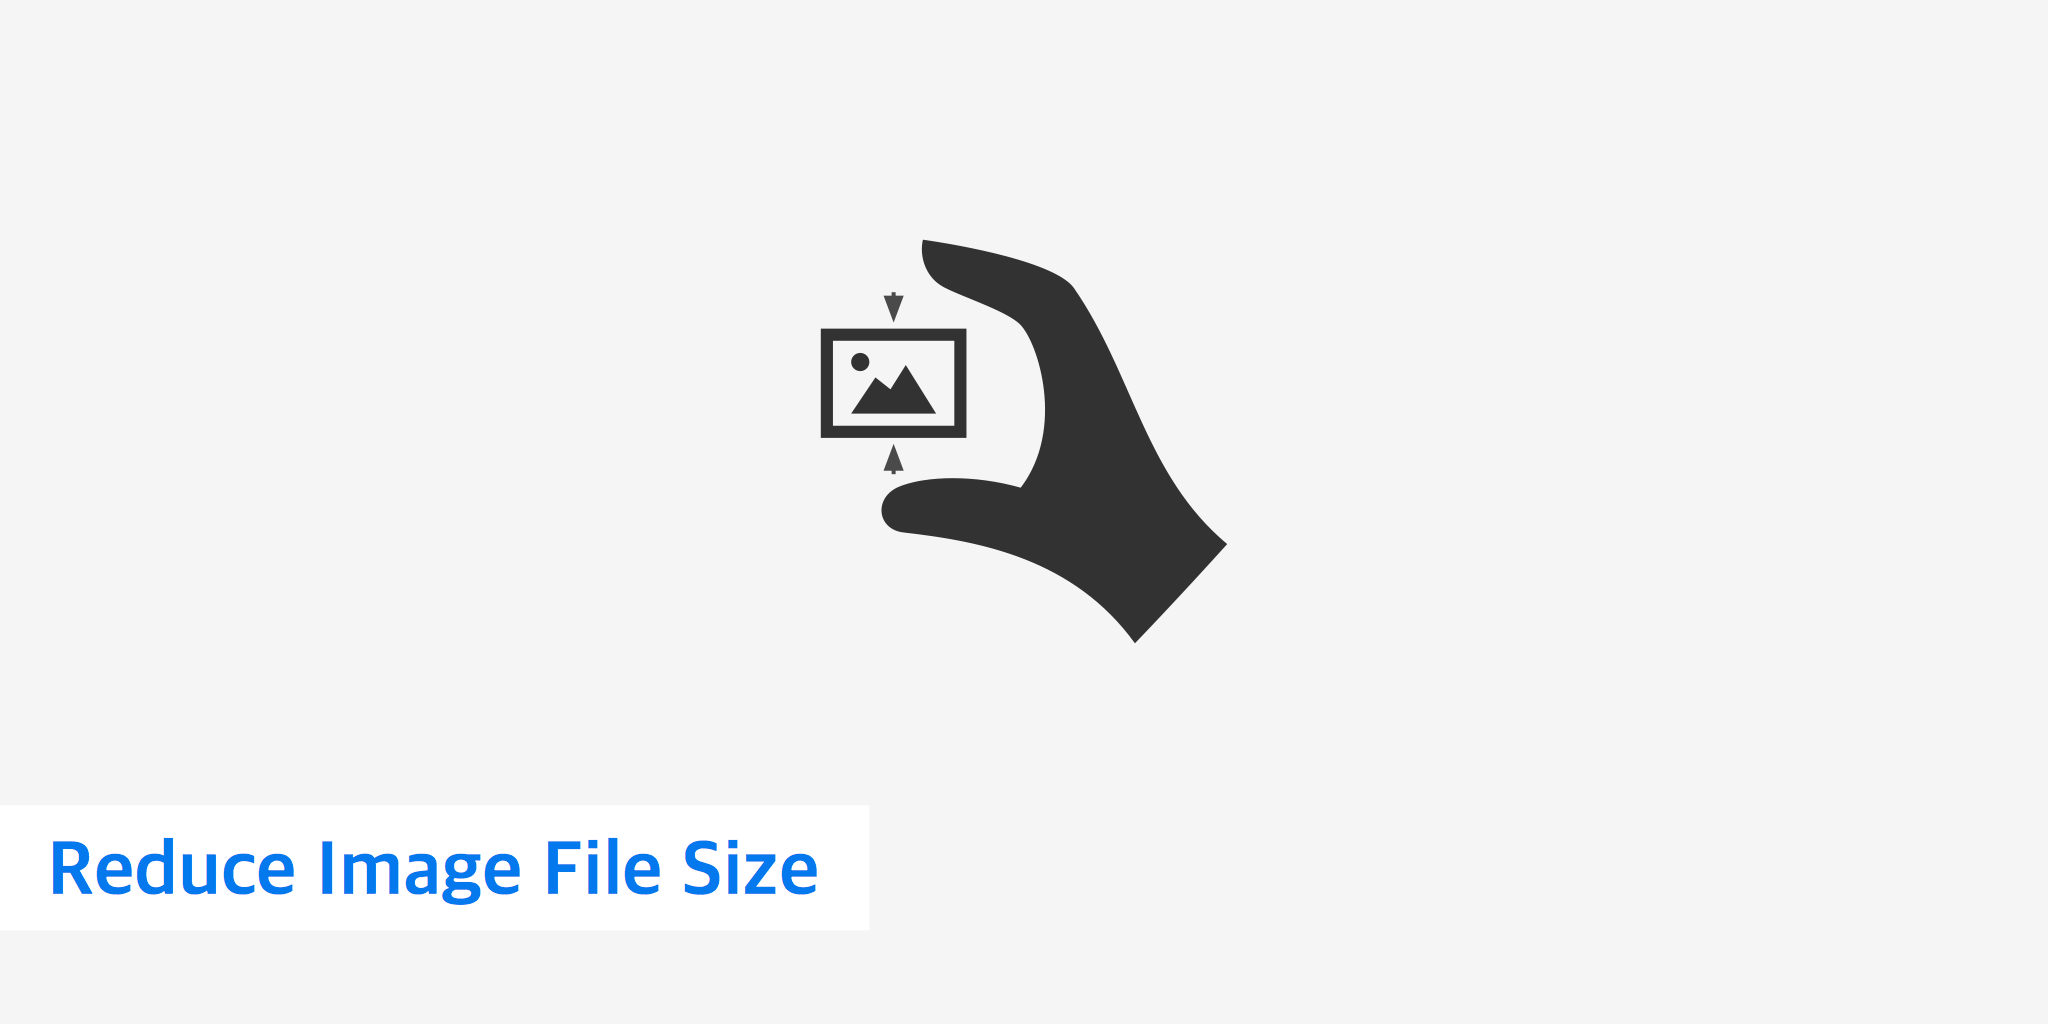 Reduce Logo - Reduce Image File Size